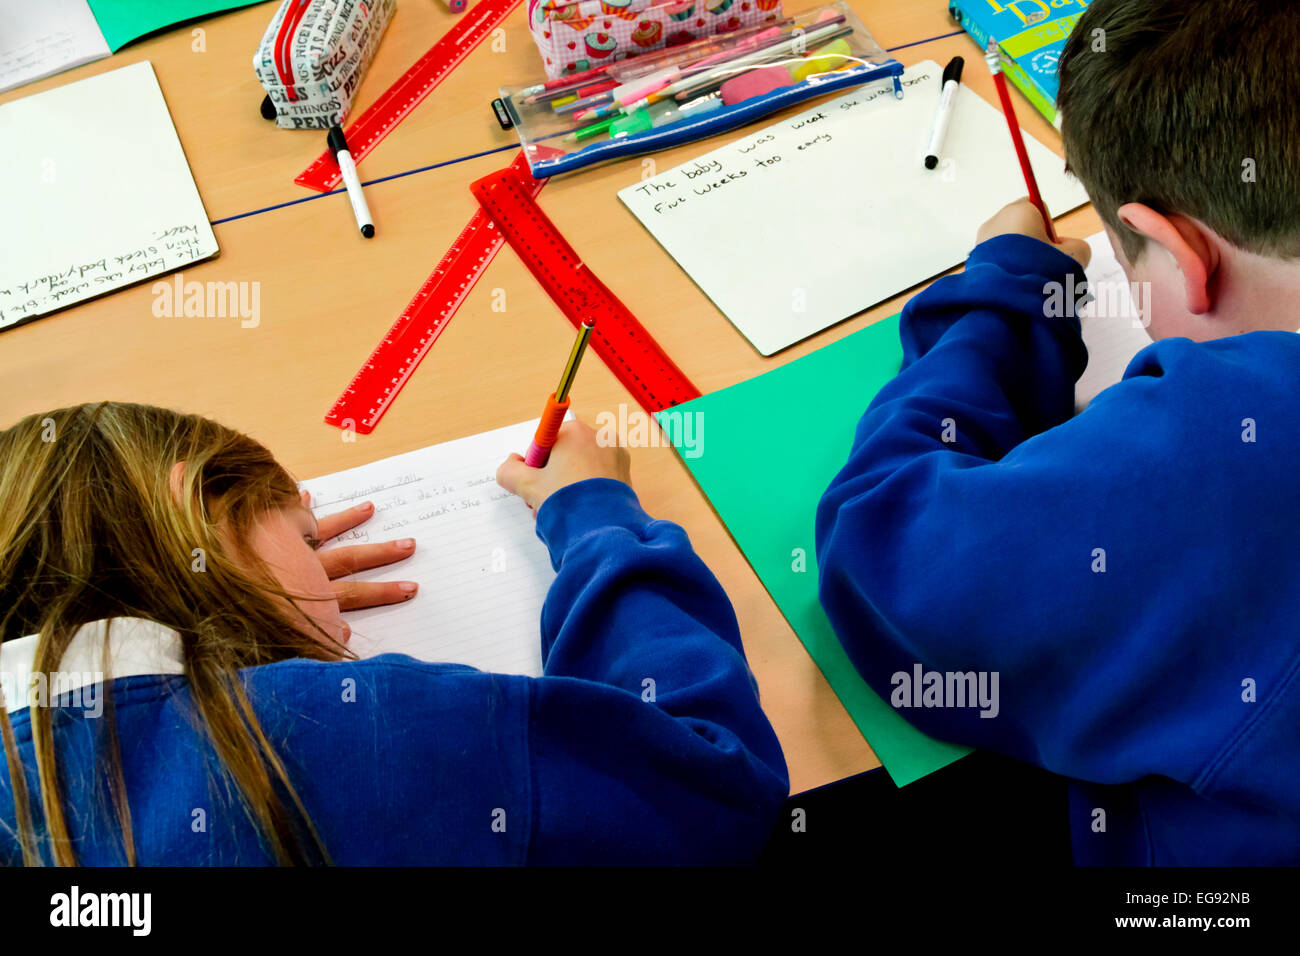 Les enfants de l'école primaire l'écriture avec un crayon pendant une leçon Banque D'Images